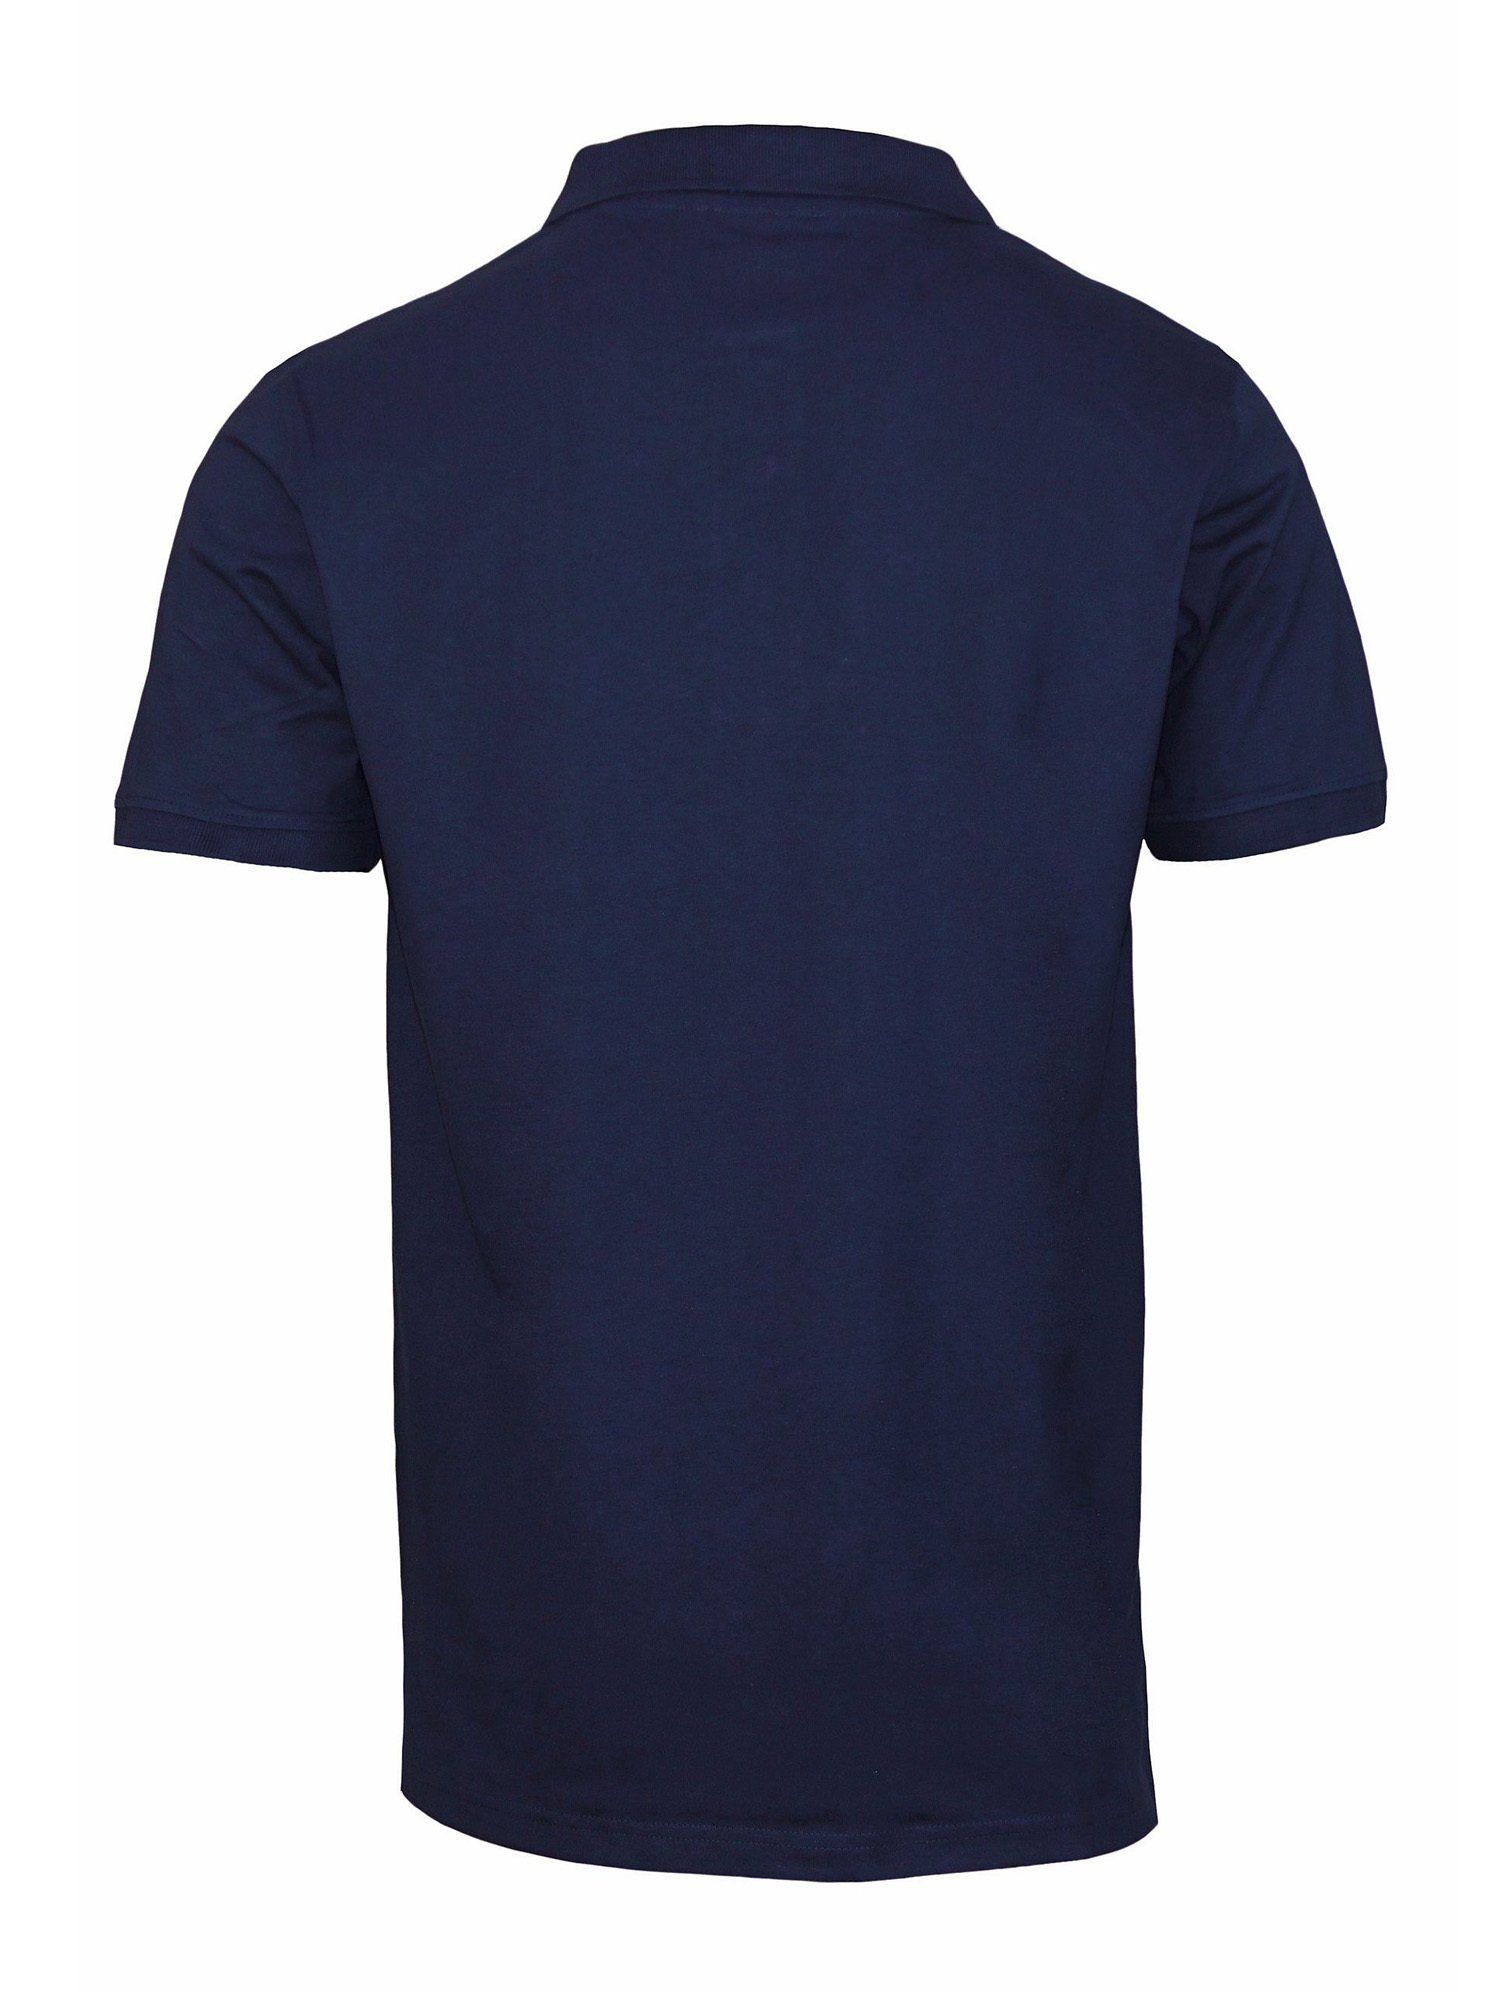 Harvey Miller Poloshirt Shirt Poloshirt Polo (1-tlg) dunkelblau Club Jersey